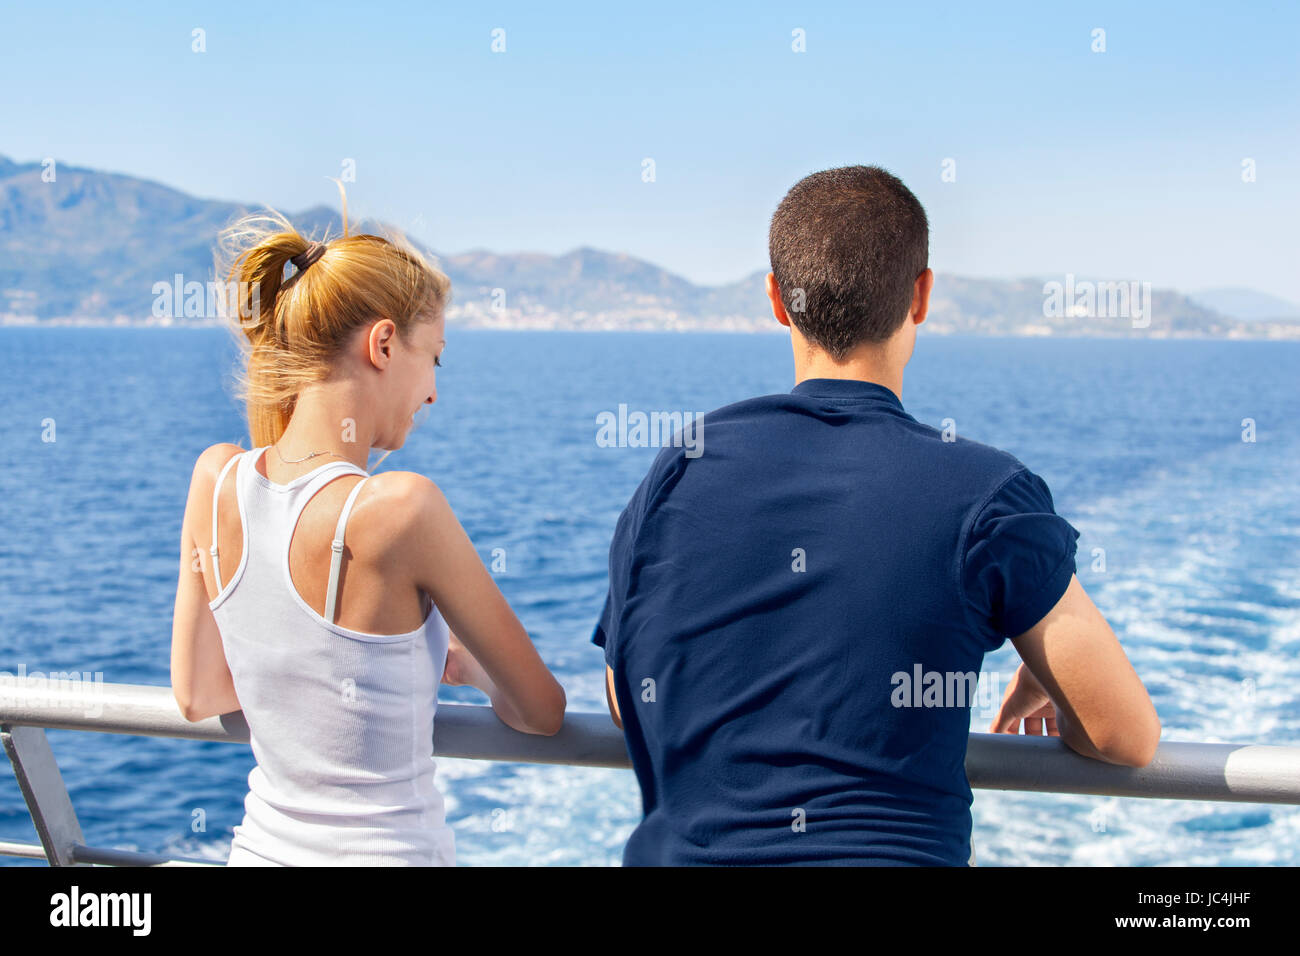 Zwei Jugendliche Frau und Mann auf einem Schiff Segeln und genießen ihren Sommer-Urlaub am Meer. Stockfoto